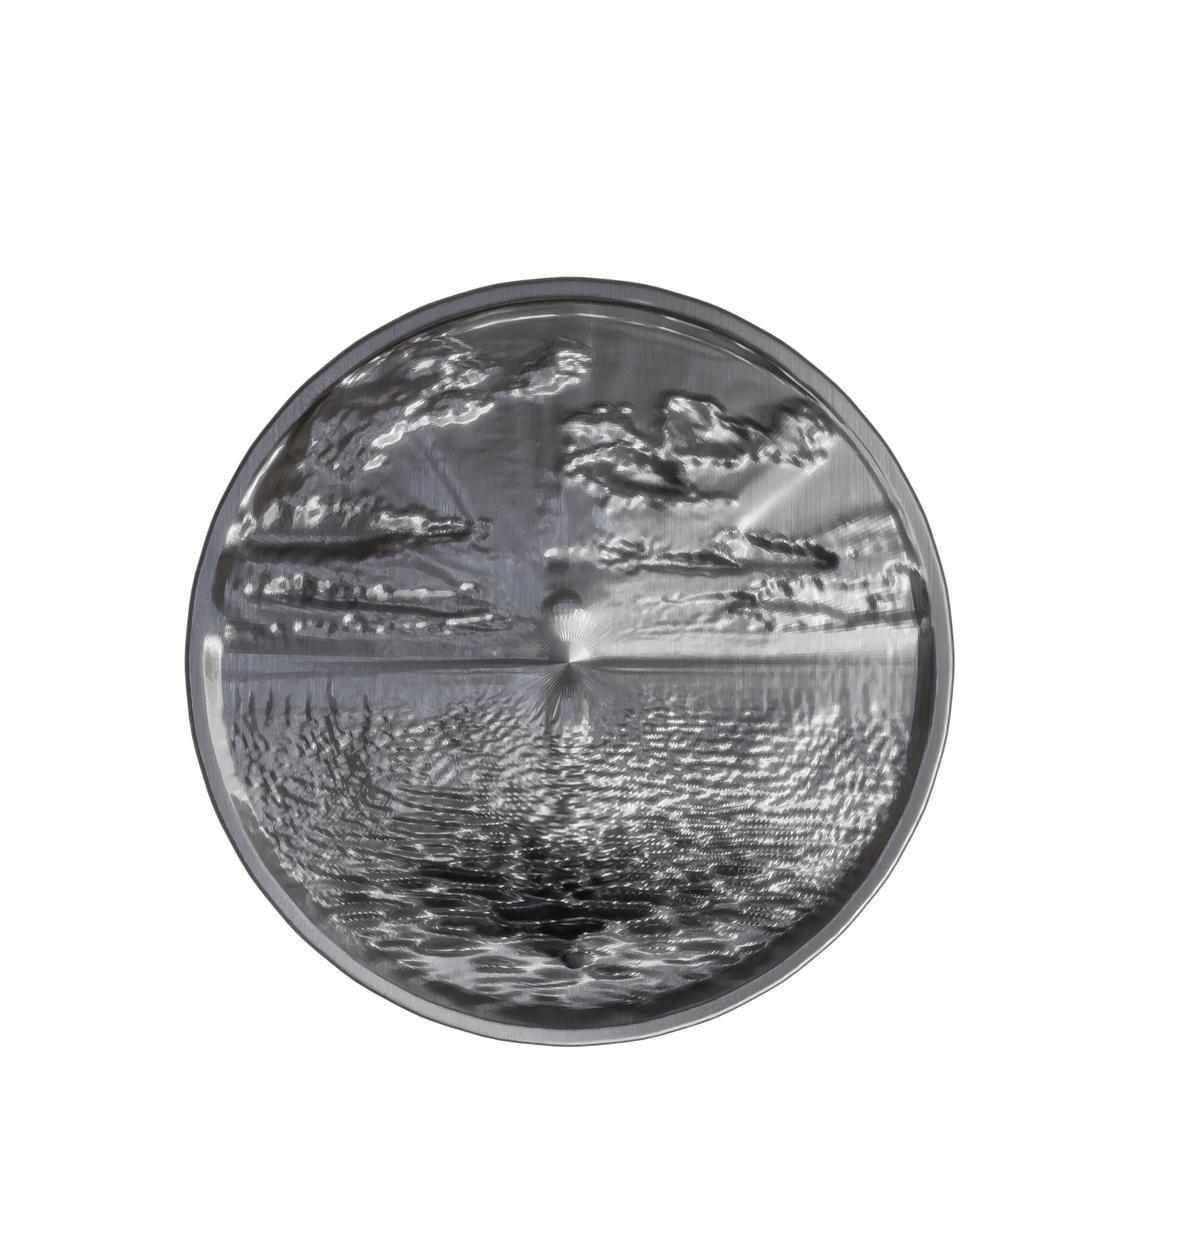 Una de las monedas creadas por Lola Zoido.